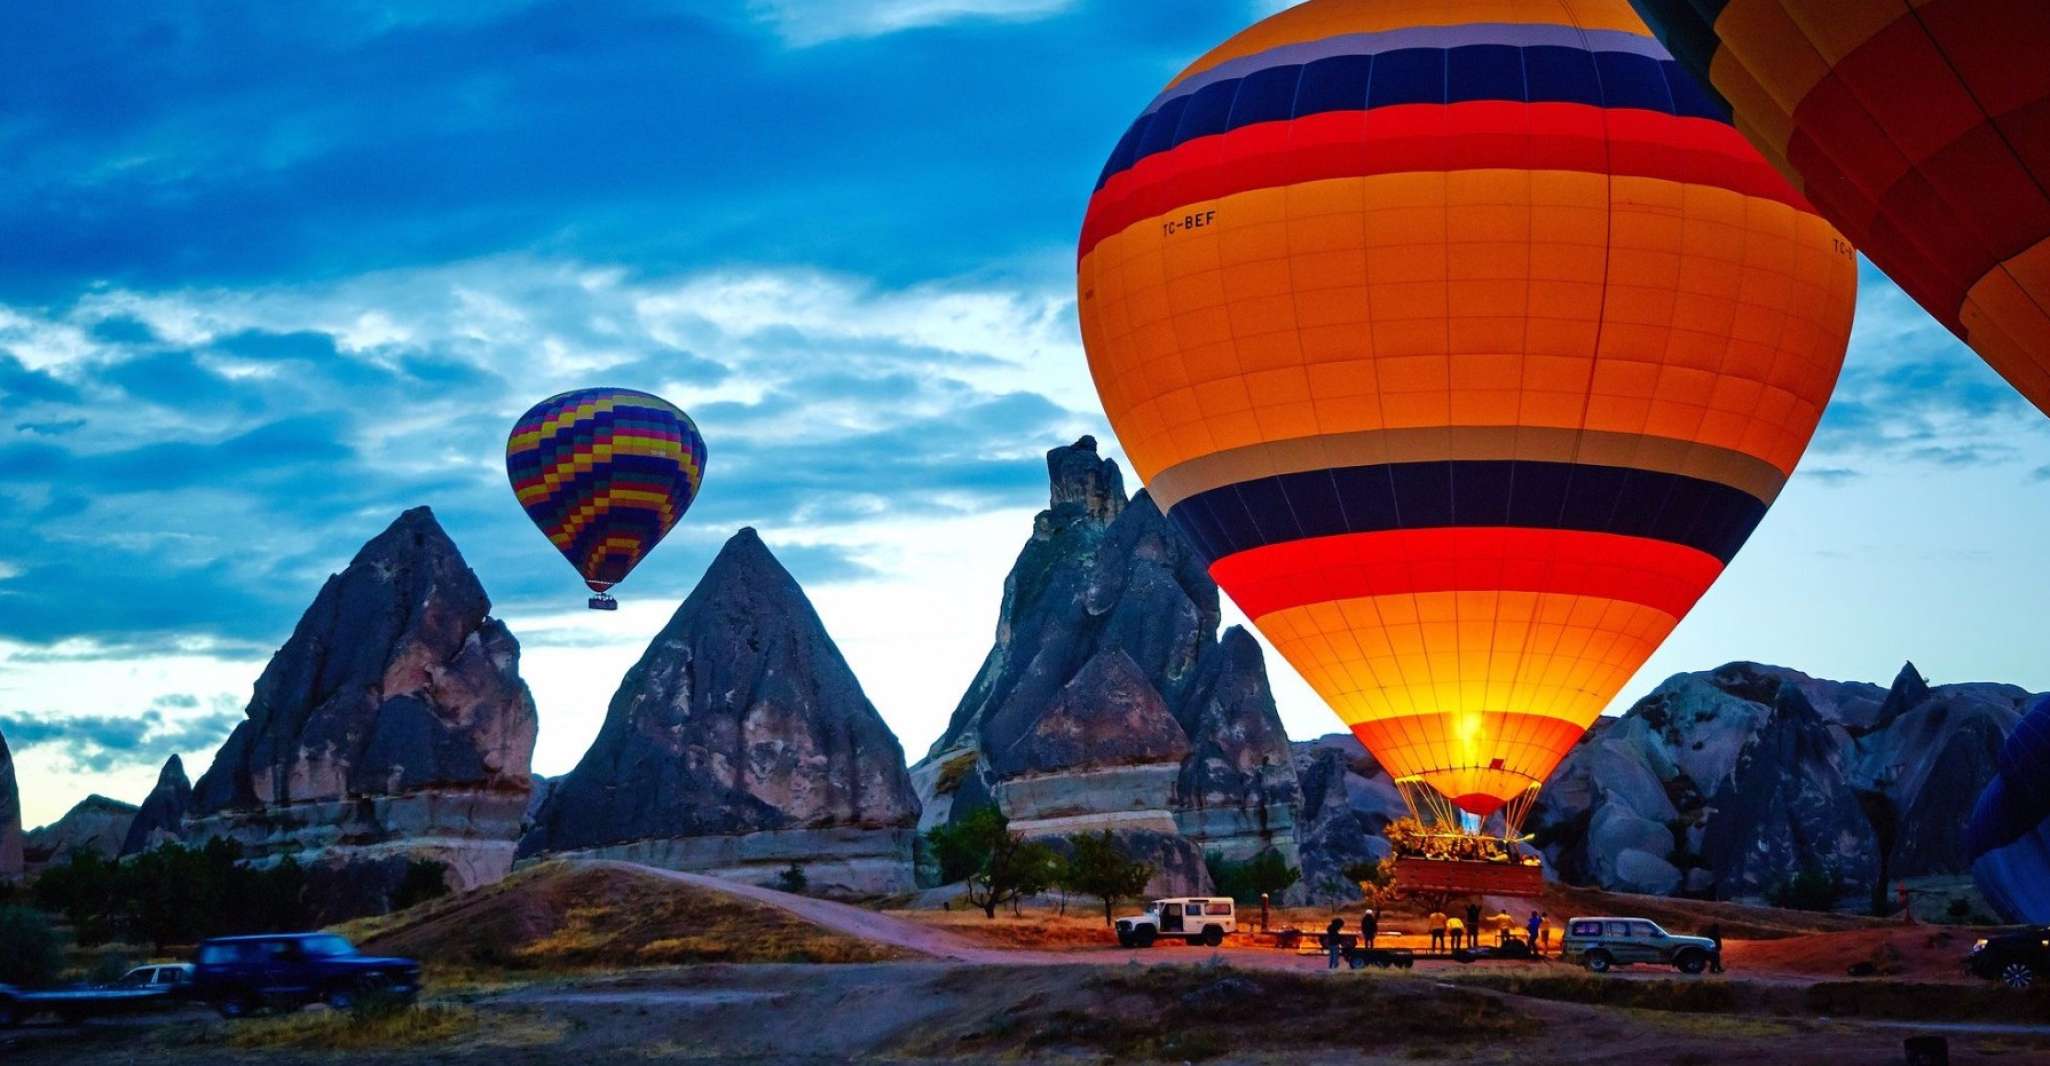 Cappadocia, 1 of 3 Valleys Hot Air Balloon Flight - Housity